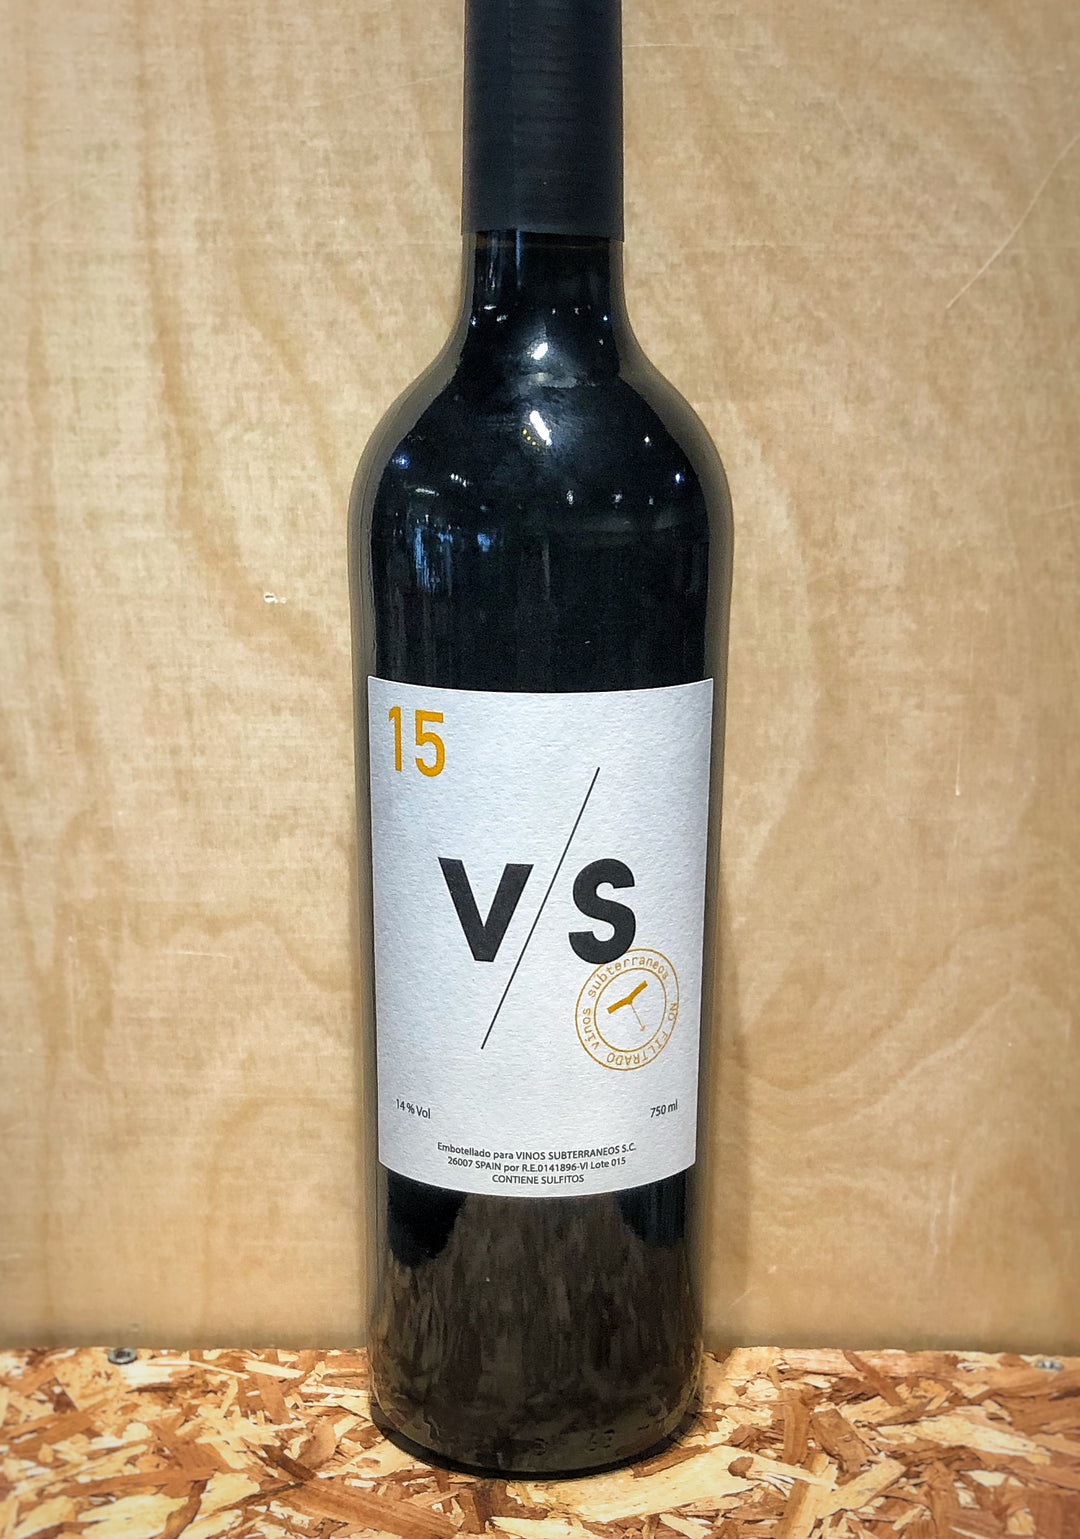 Vinos Subterráneos 'V/S' Tinto Rioja 2015 (Rioja, Spain)